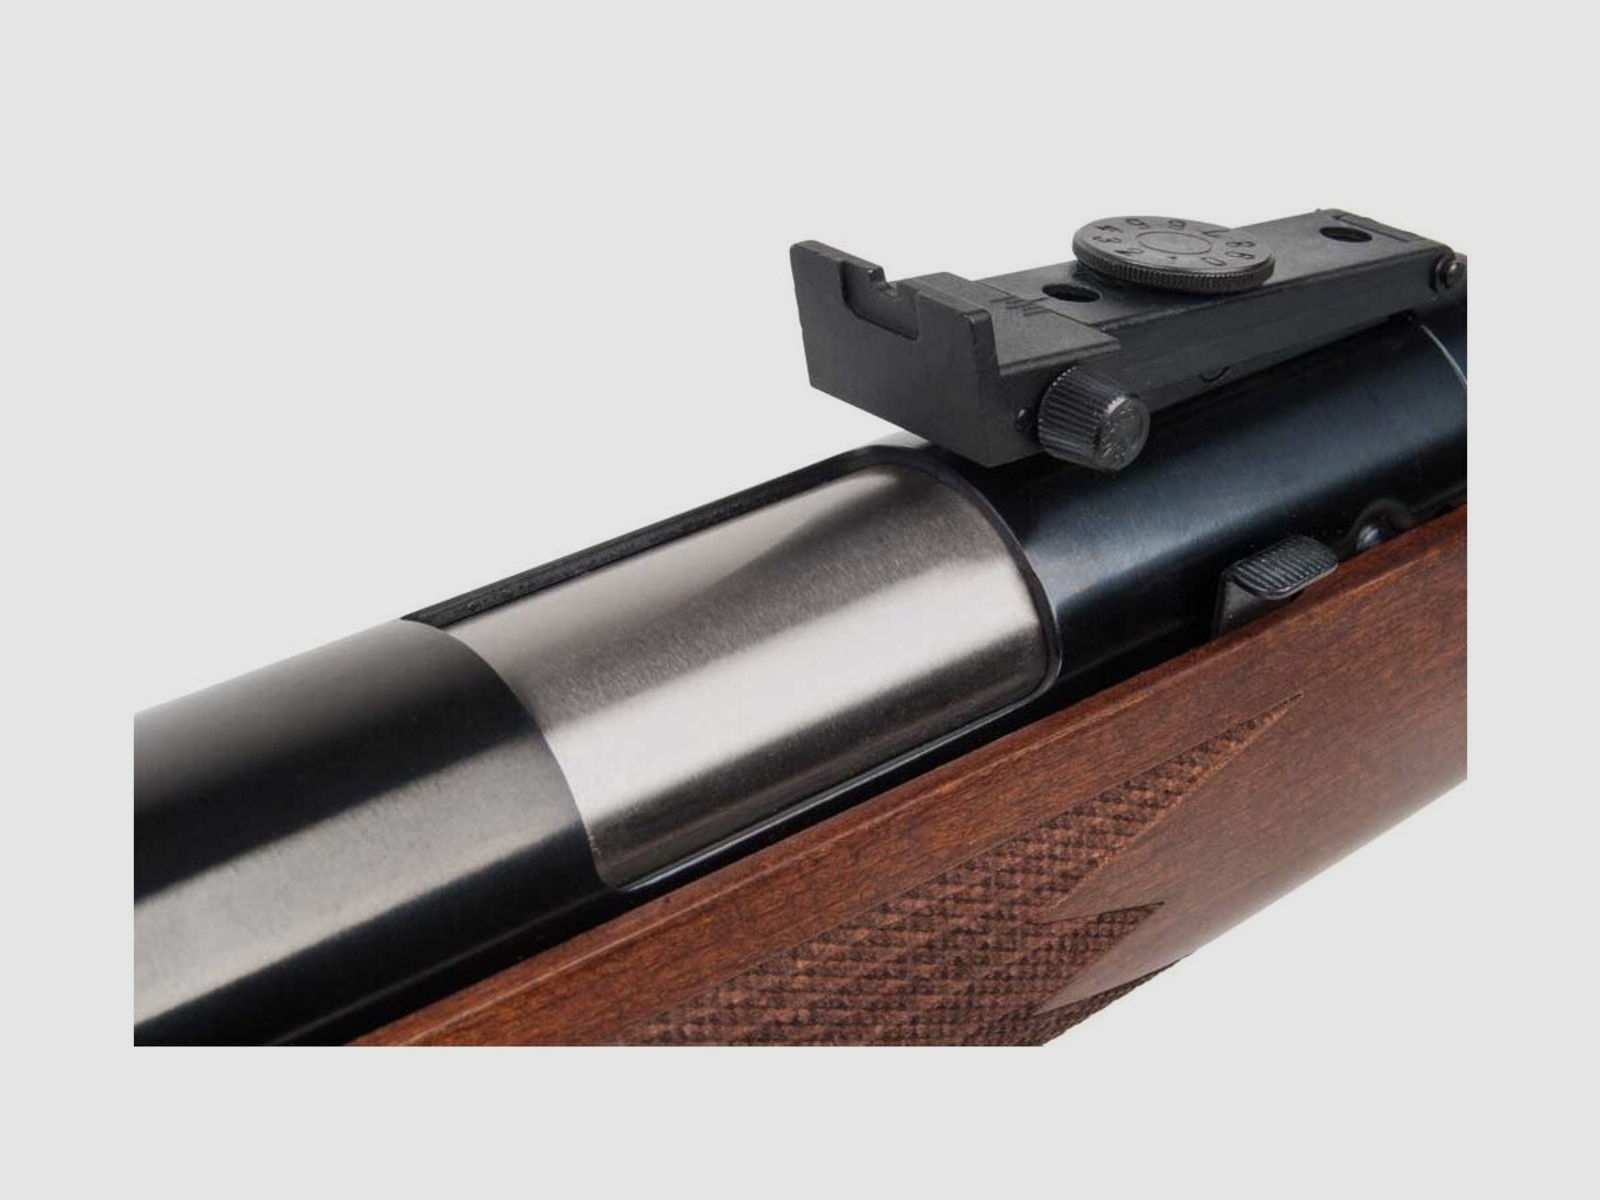 Diana 460 Magnum Luftgewehr Unterhebelspanner, kal. 4,5 mm Diabolo